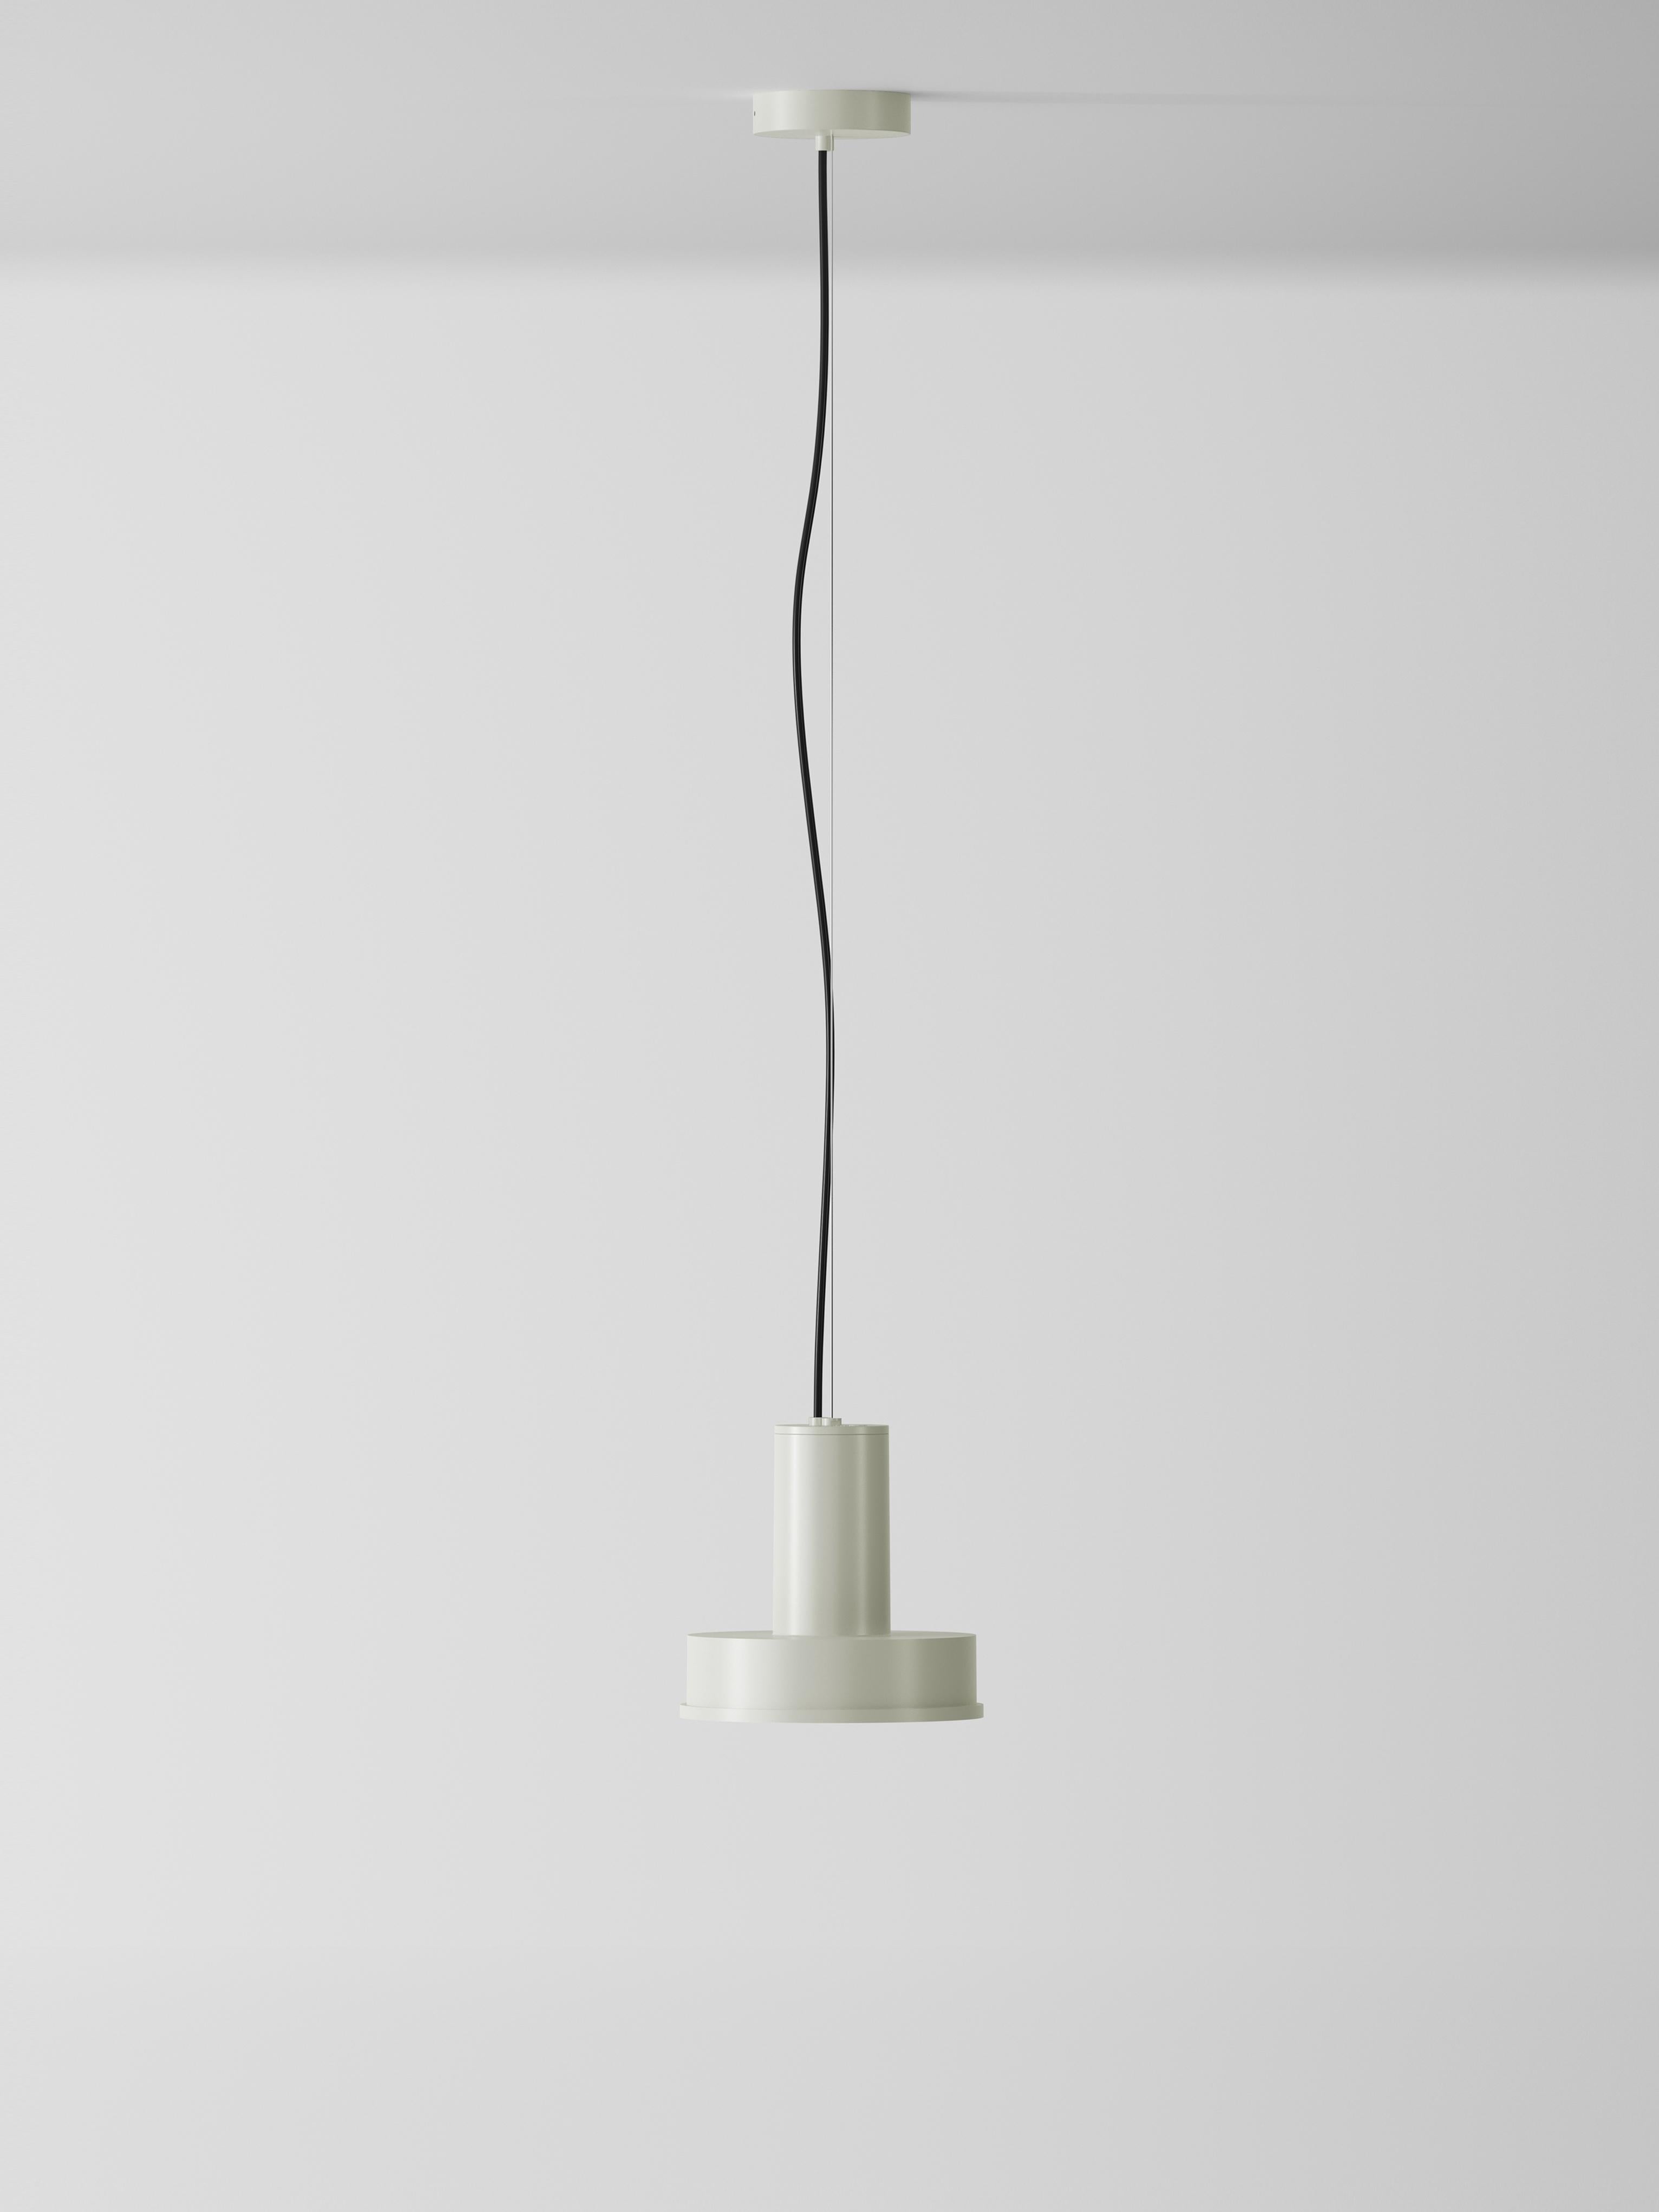 Lampe suspendue Domus White Arne S de Santa & Cole
Dimensions : D 23 x H 440 cm
Matériaux : Métal, aluminium.
Disponible dans d'autres couleurs.

Son corps en aluminium abrite la meilleure technologie LED avec un émetteur COB unique, protégé de la